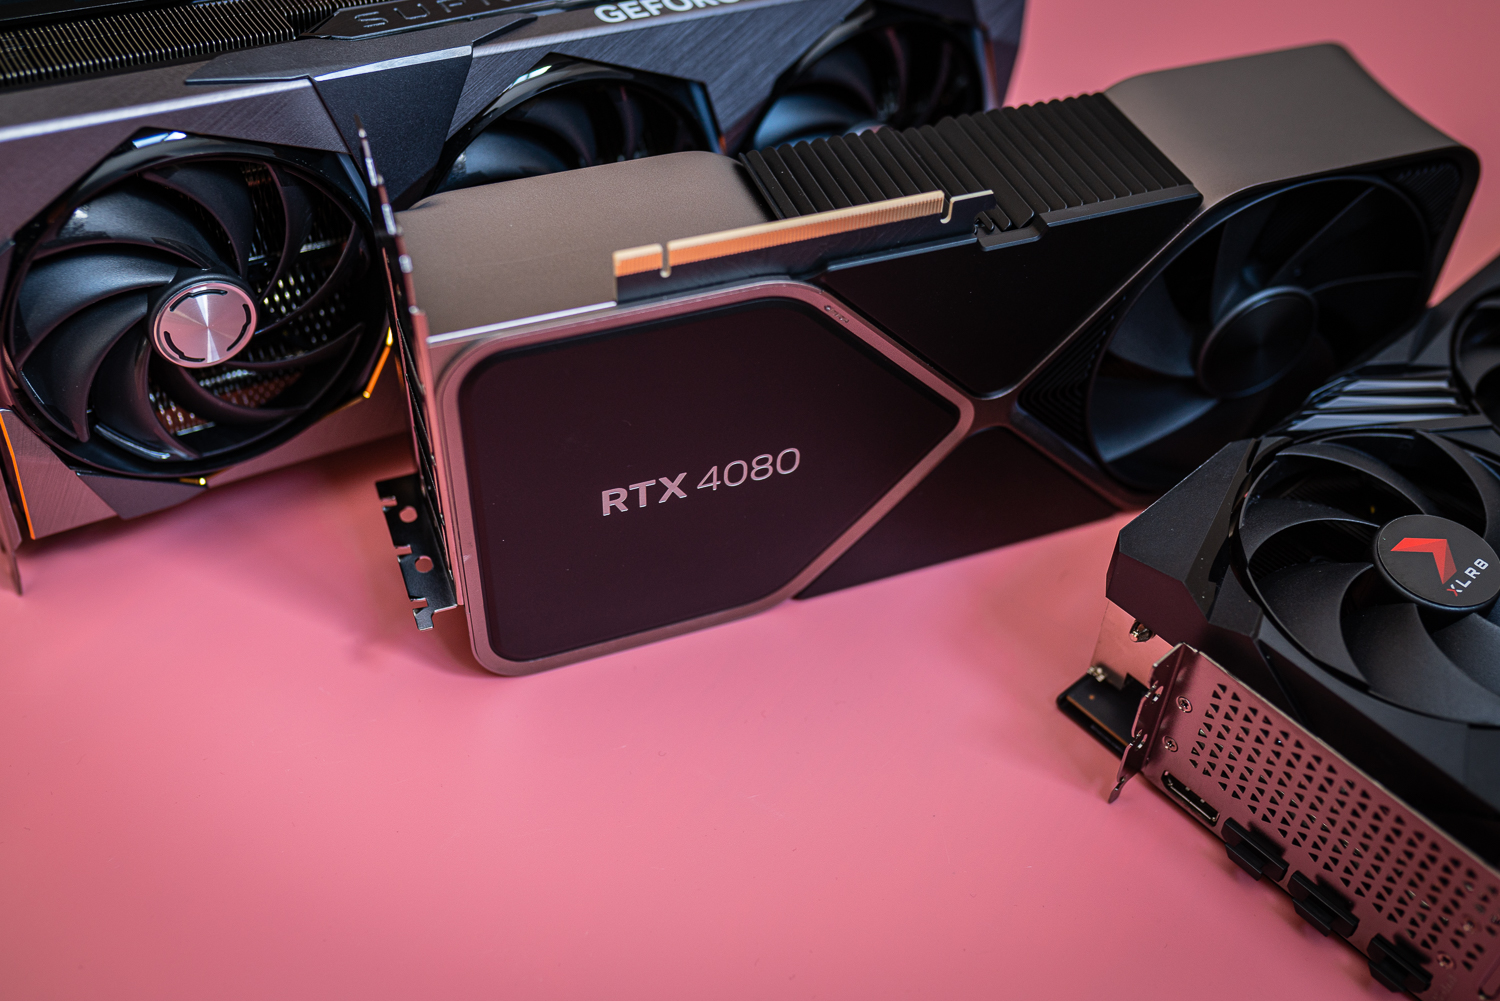 Drei RTX 4080-Karten sitzen auf einem rosa Hintergrund.